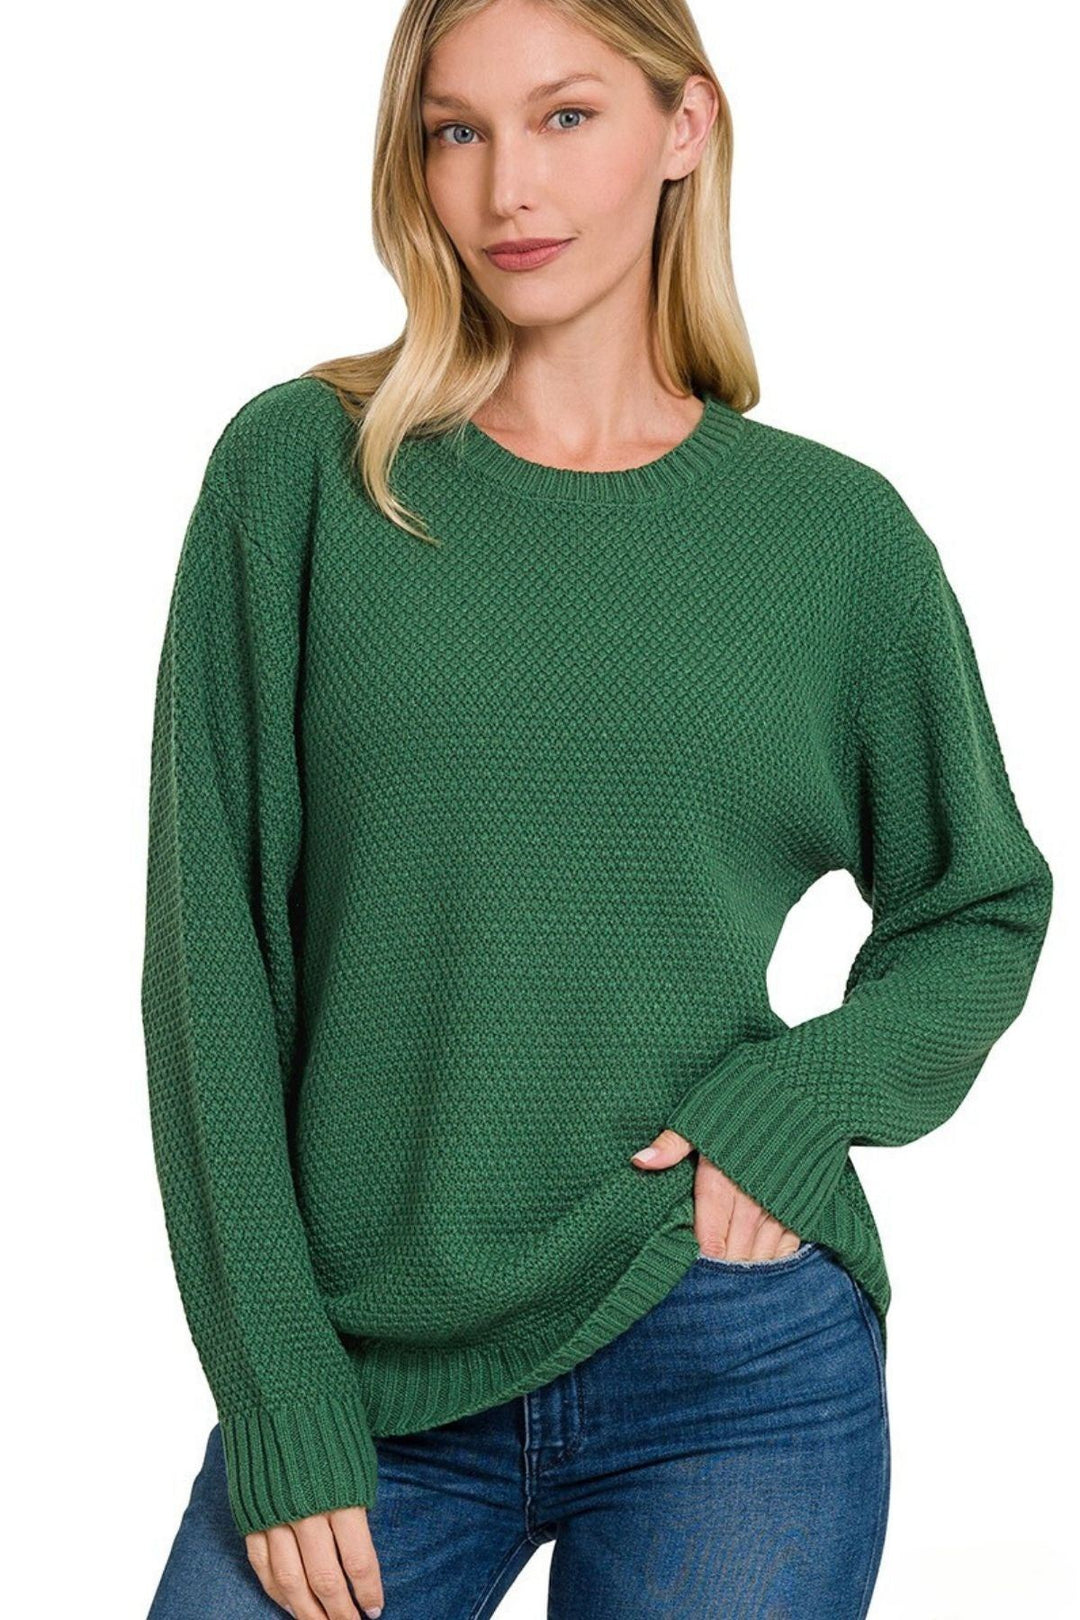 Zenana Sweater - Basics - Inspired Eye Boutique